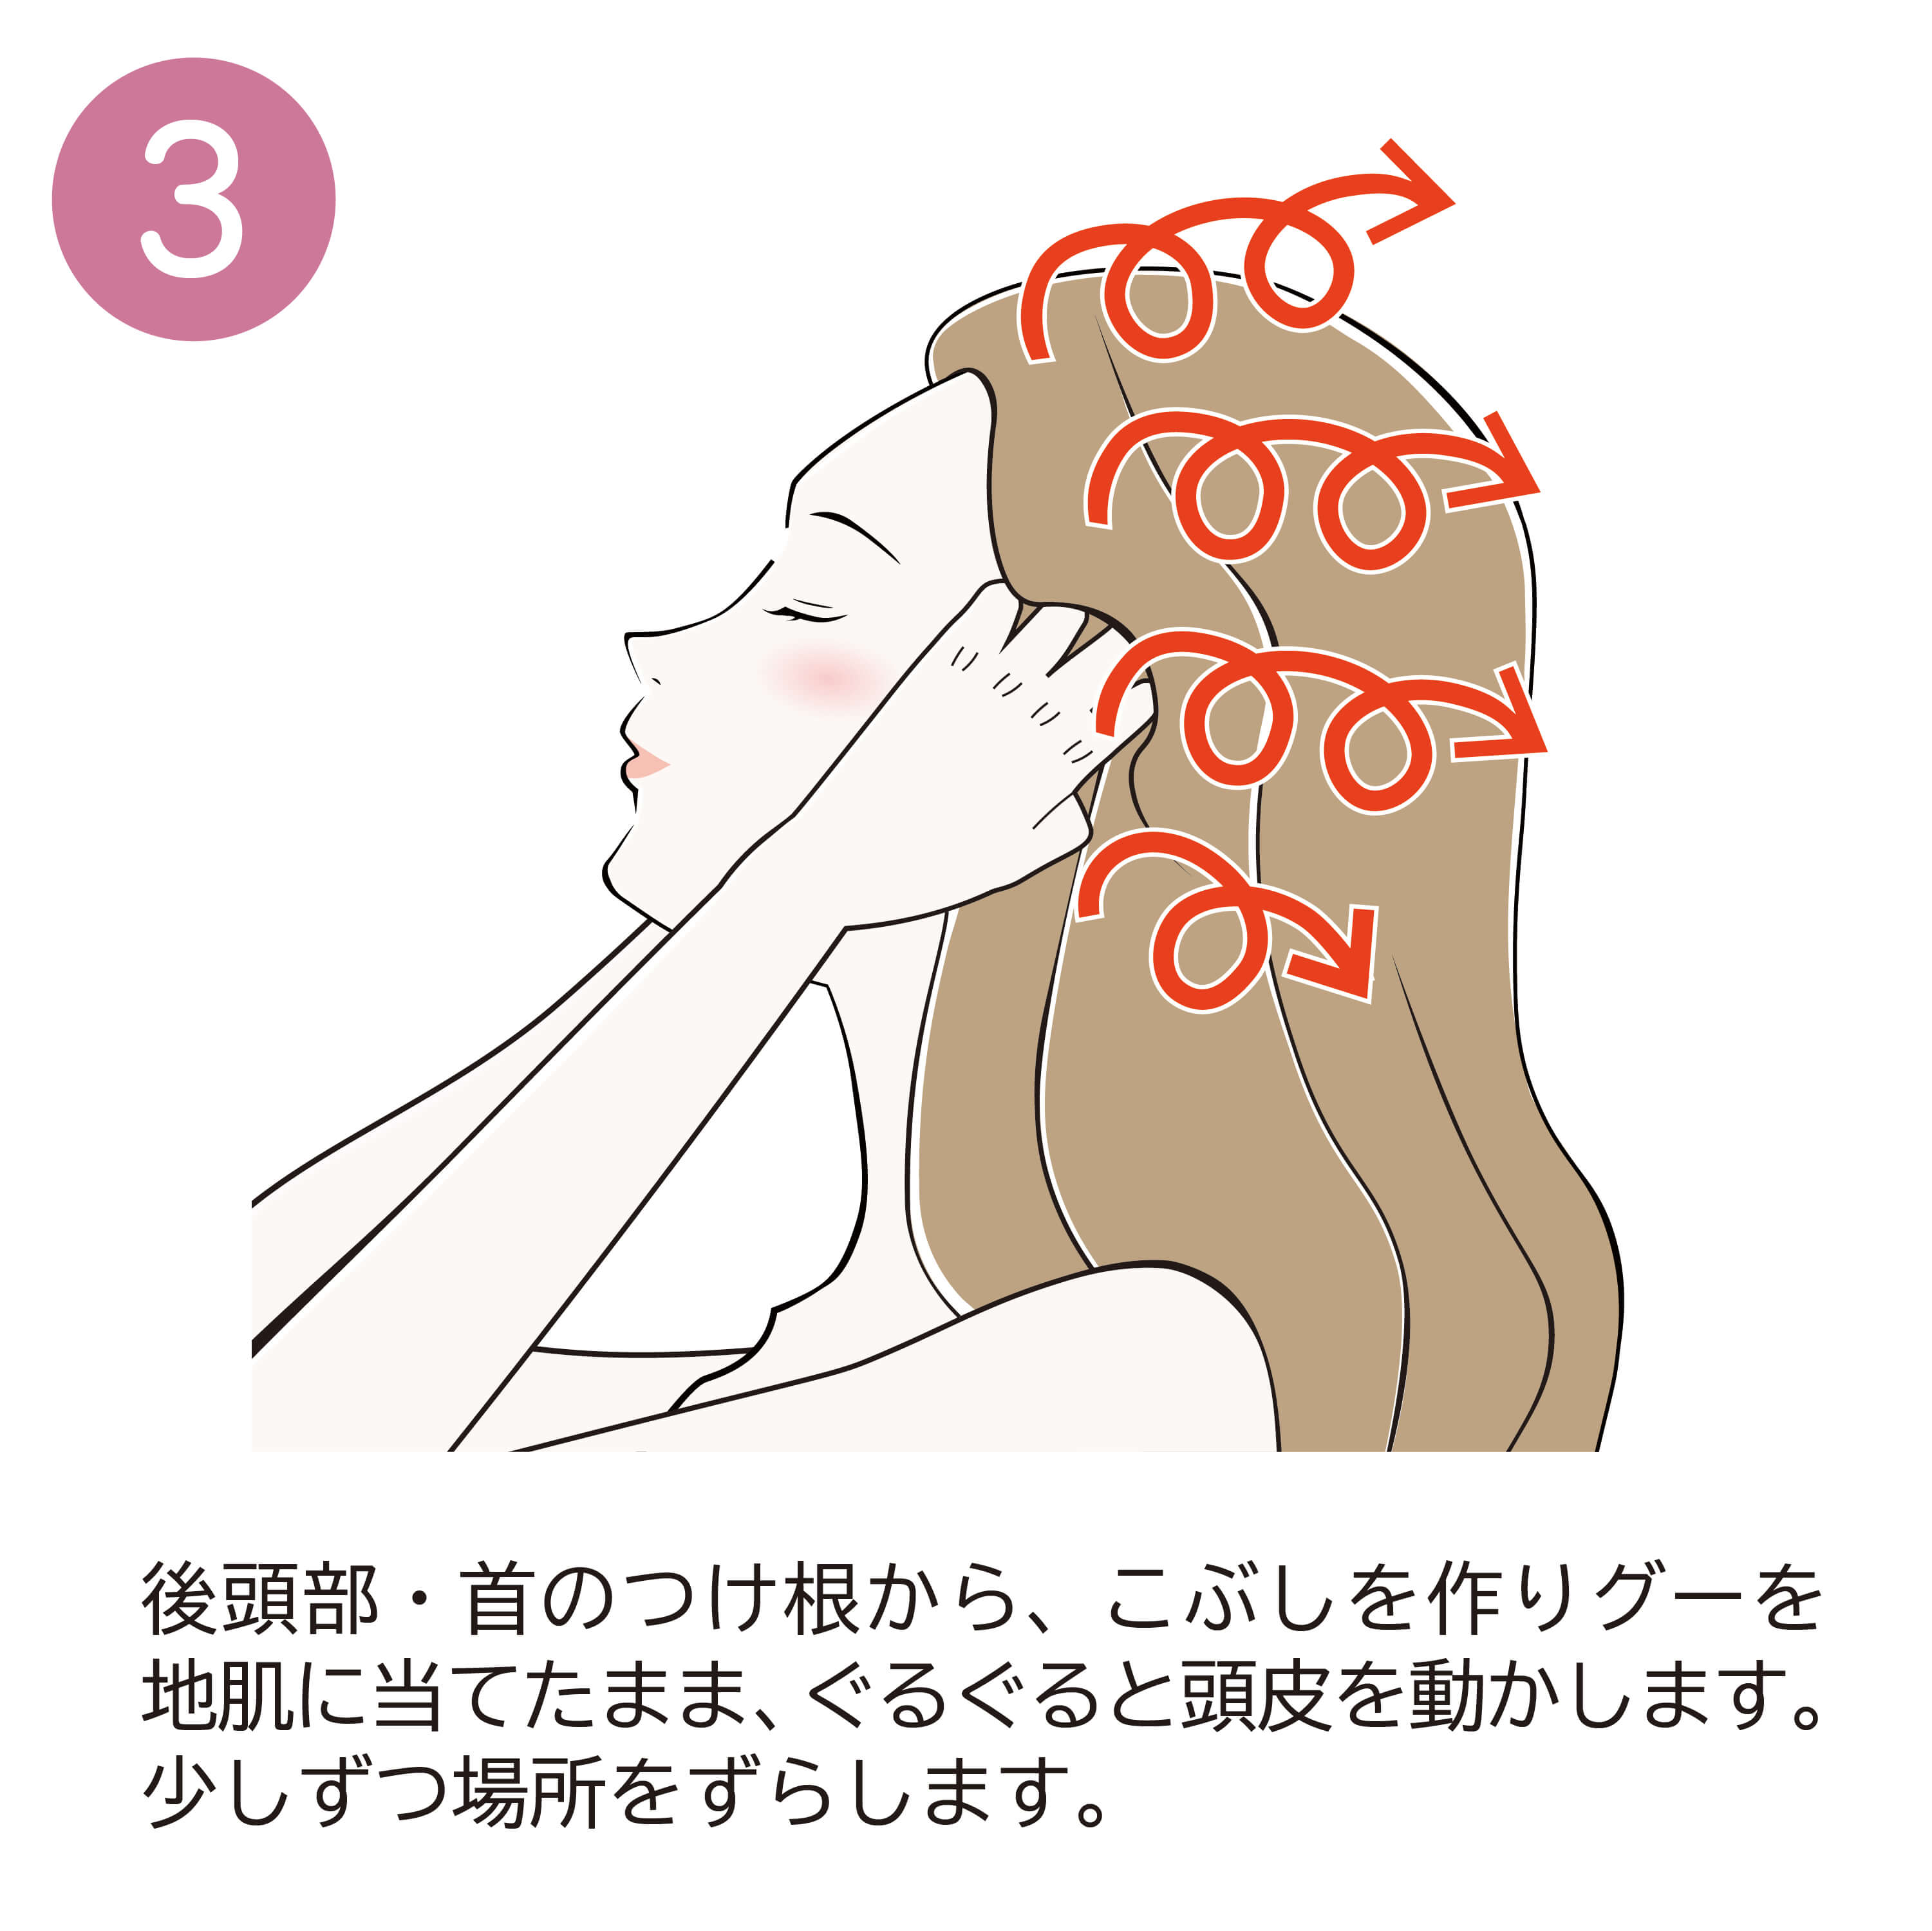 3.後頭部・首のつけ根から、こぶしを作りグーを地肌に当てたまま、ぐるぐると頭皮を動かします。少しずつ場所をずらします。